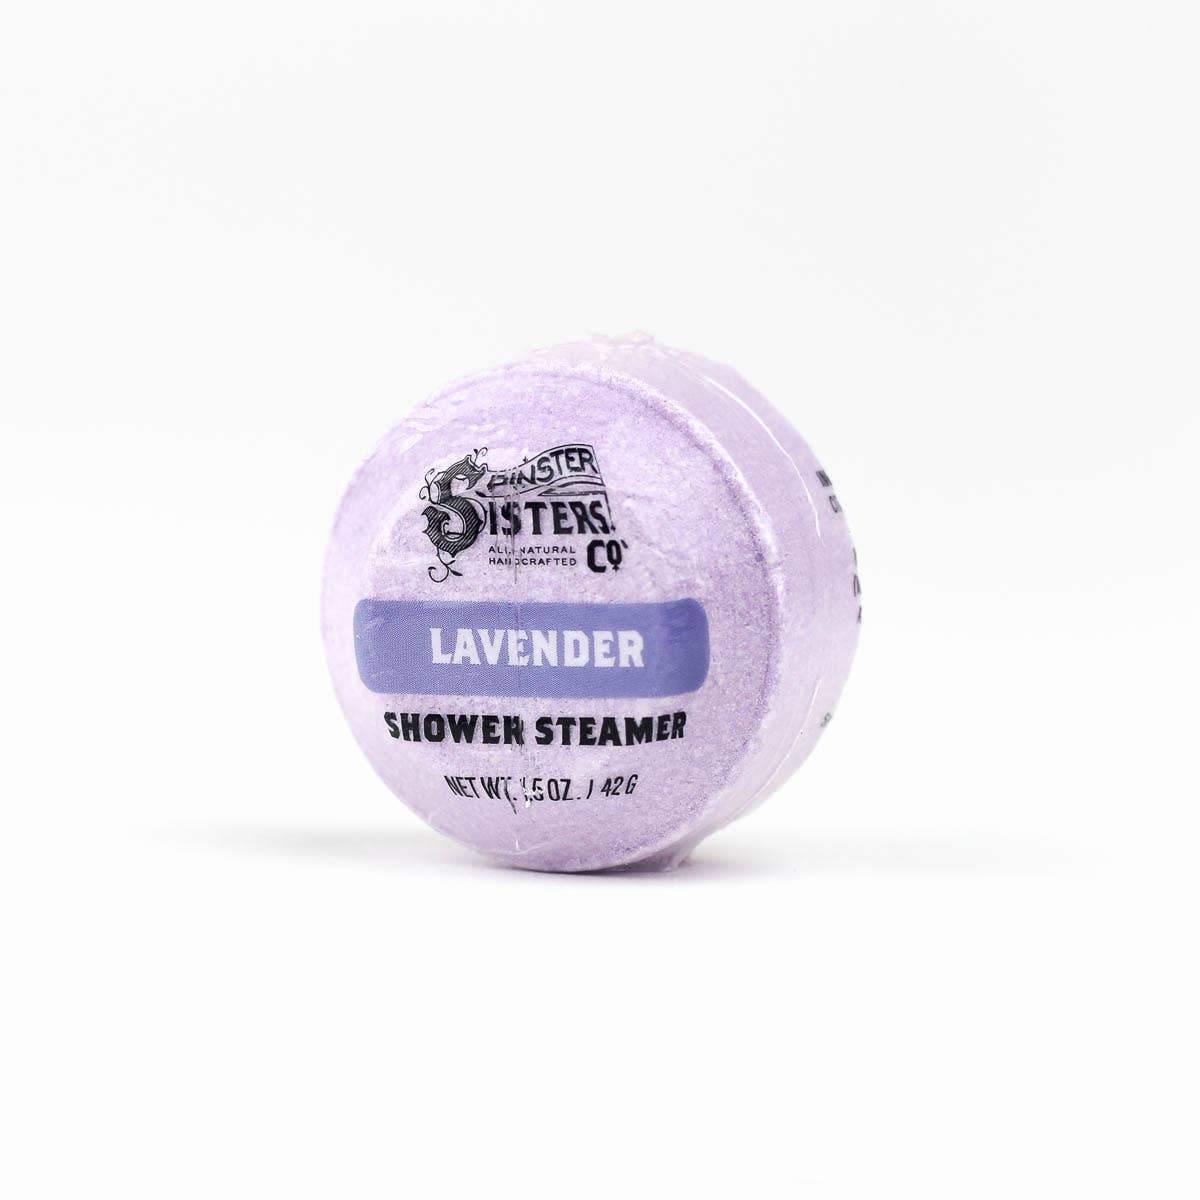 Shower Steamer - Lavender - Revival Phl